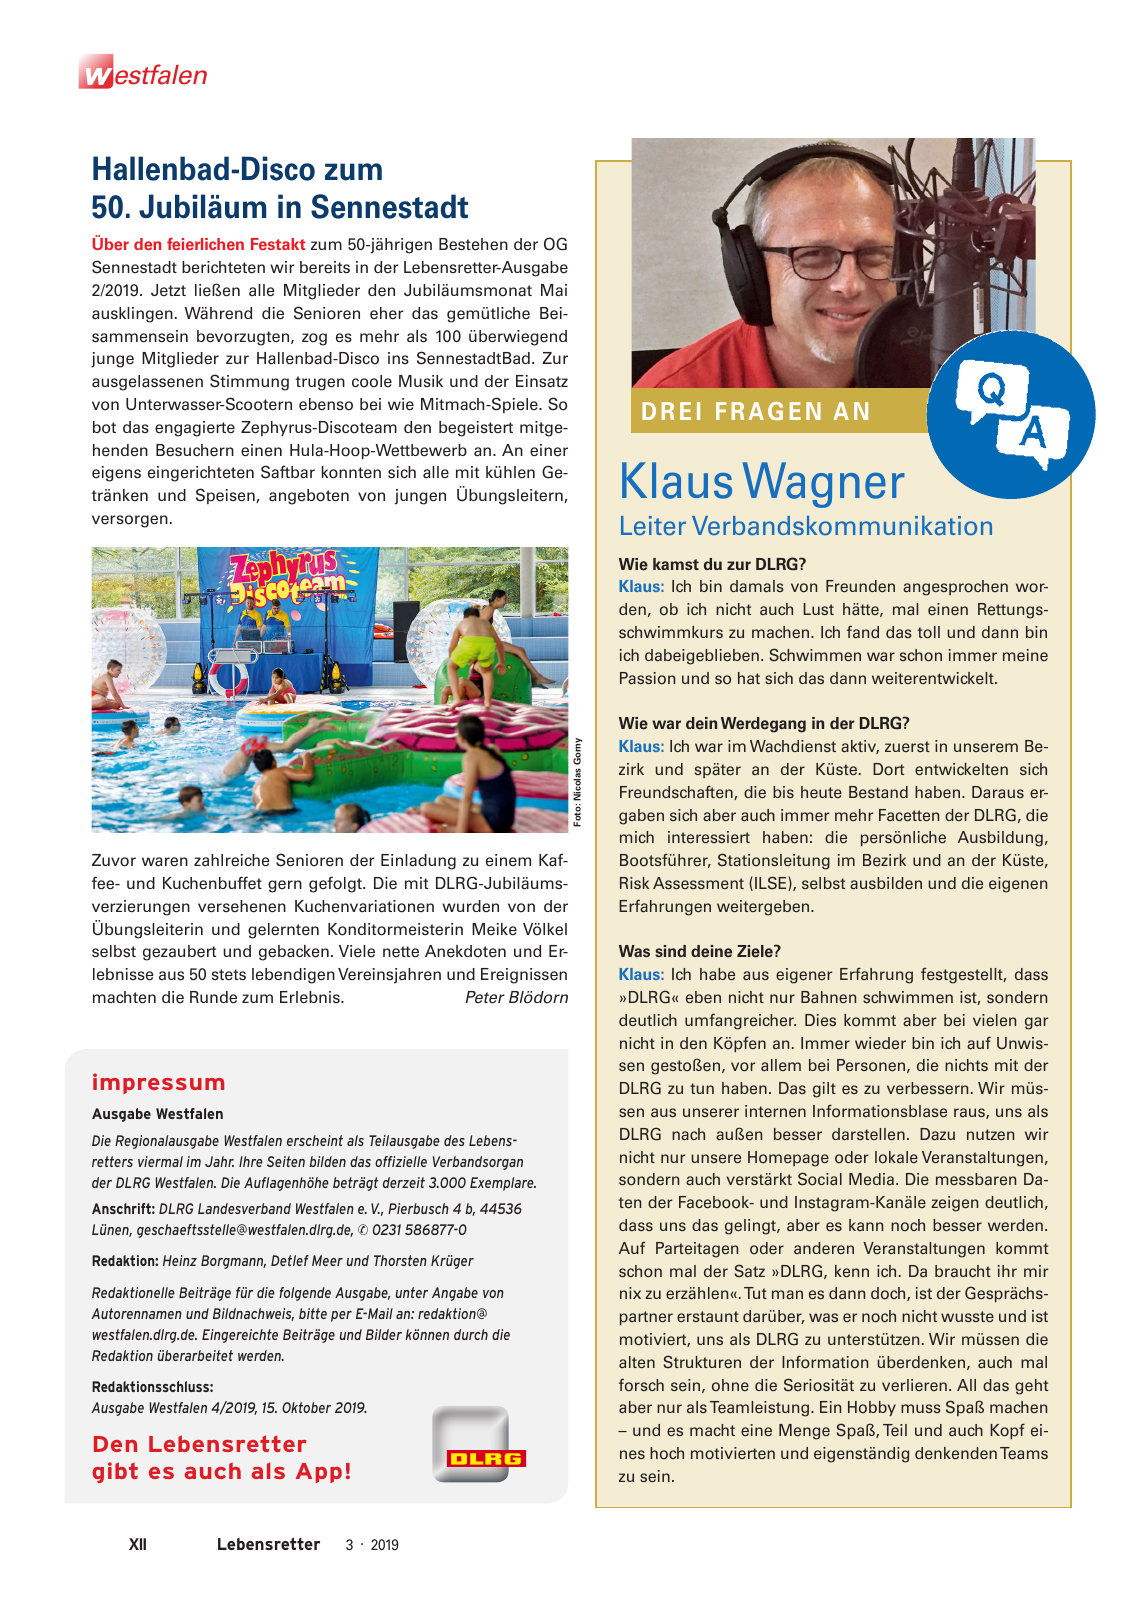 Vorschau Lebensretter 3/2019 - Westfalen Regionalausgabe Seite 14